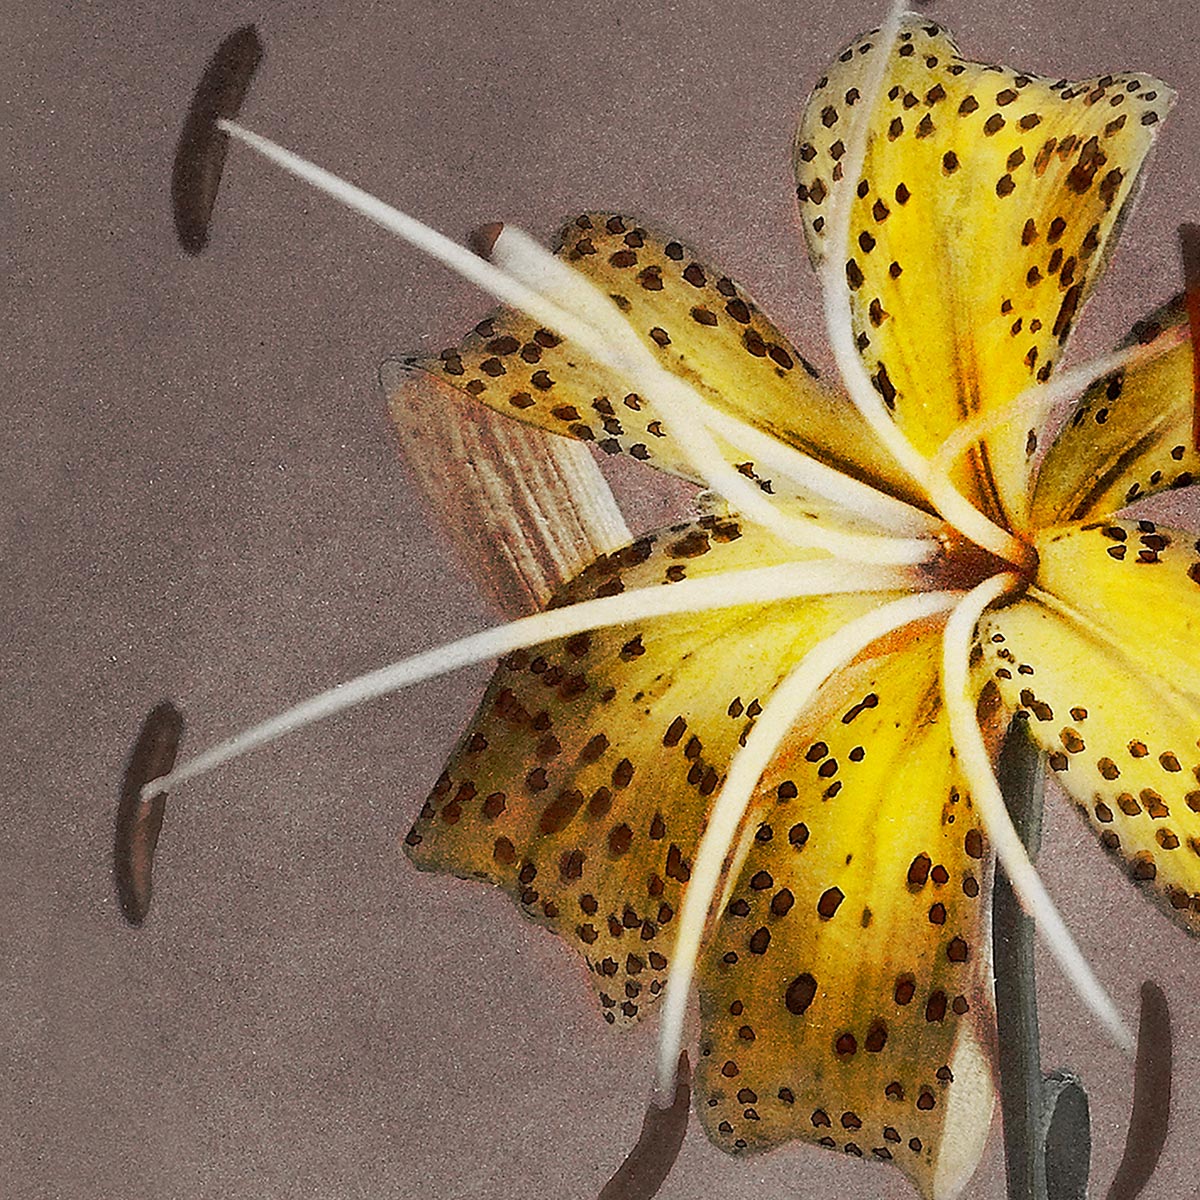 Yellow Lily by Ogawa Kazumasa